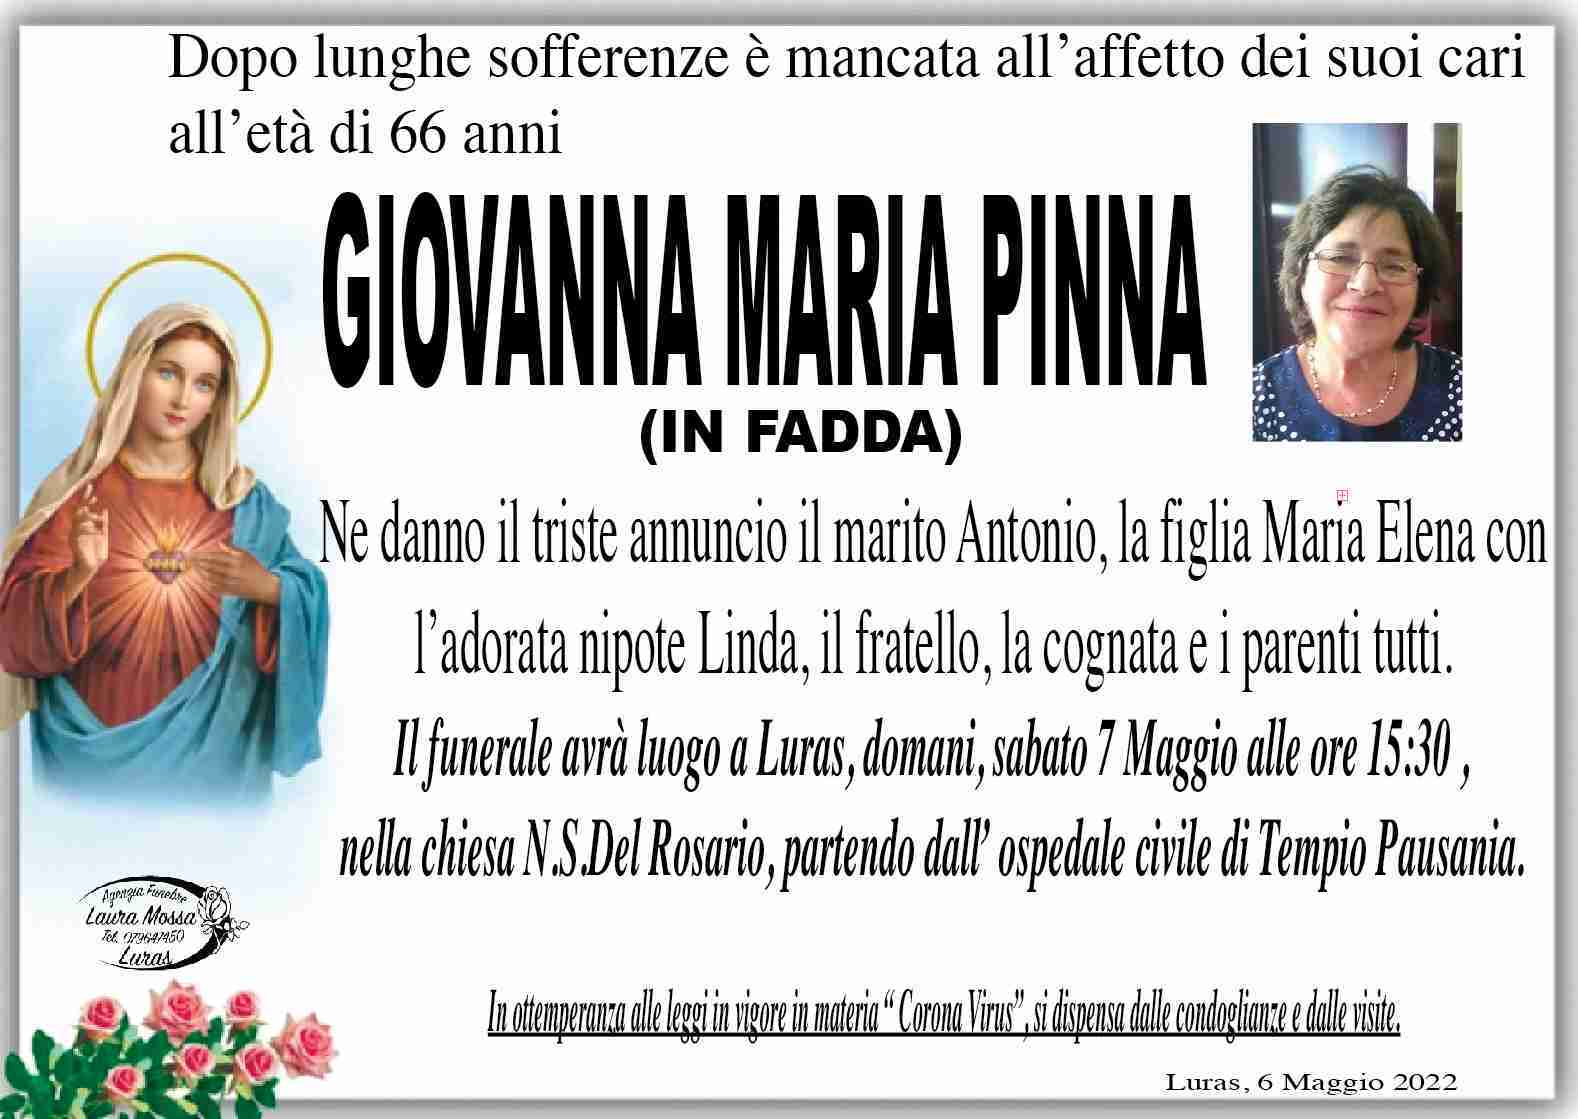 Giovanna Maria Pinna